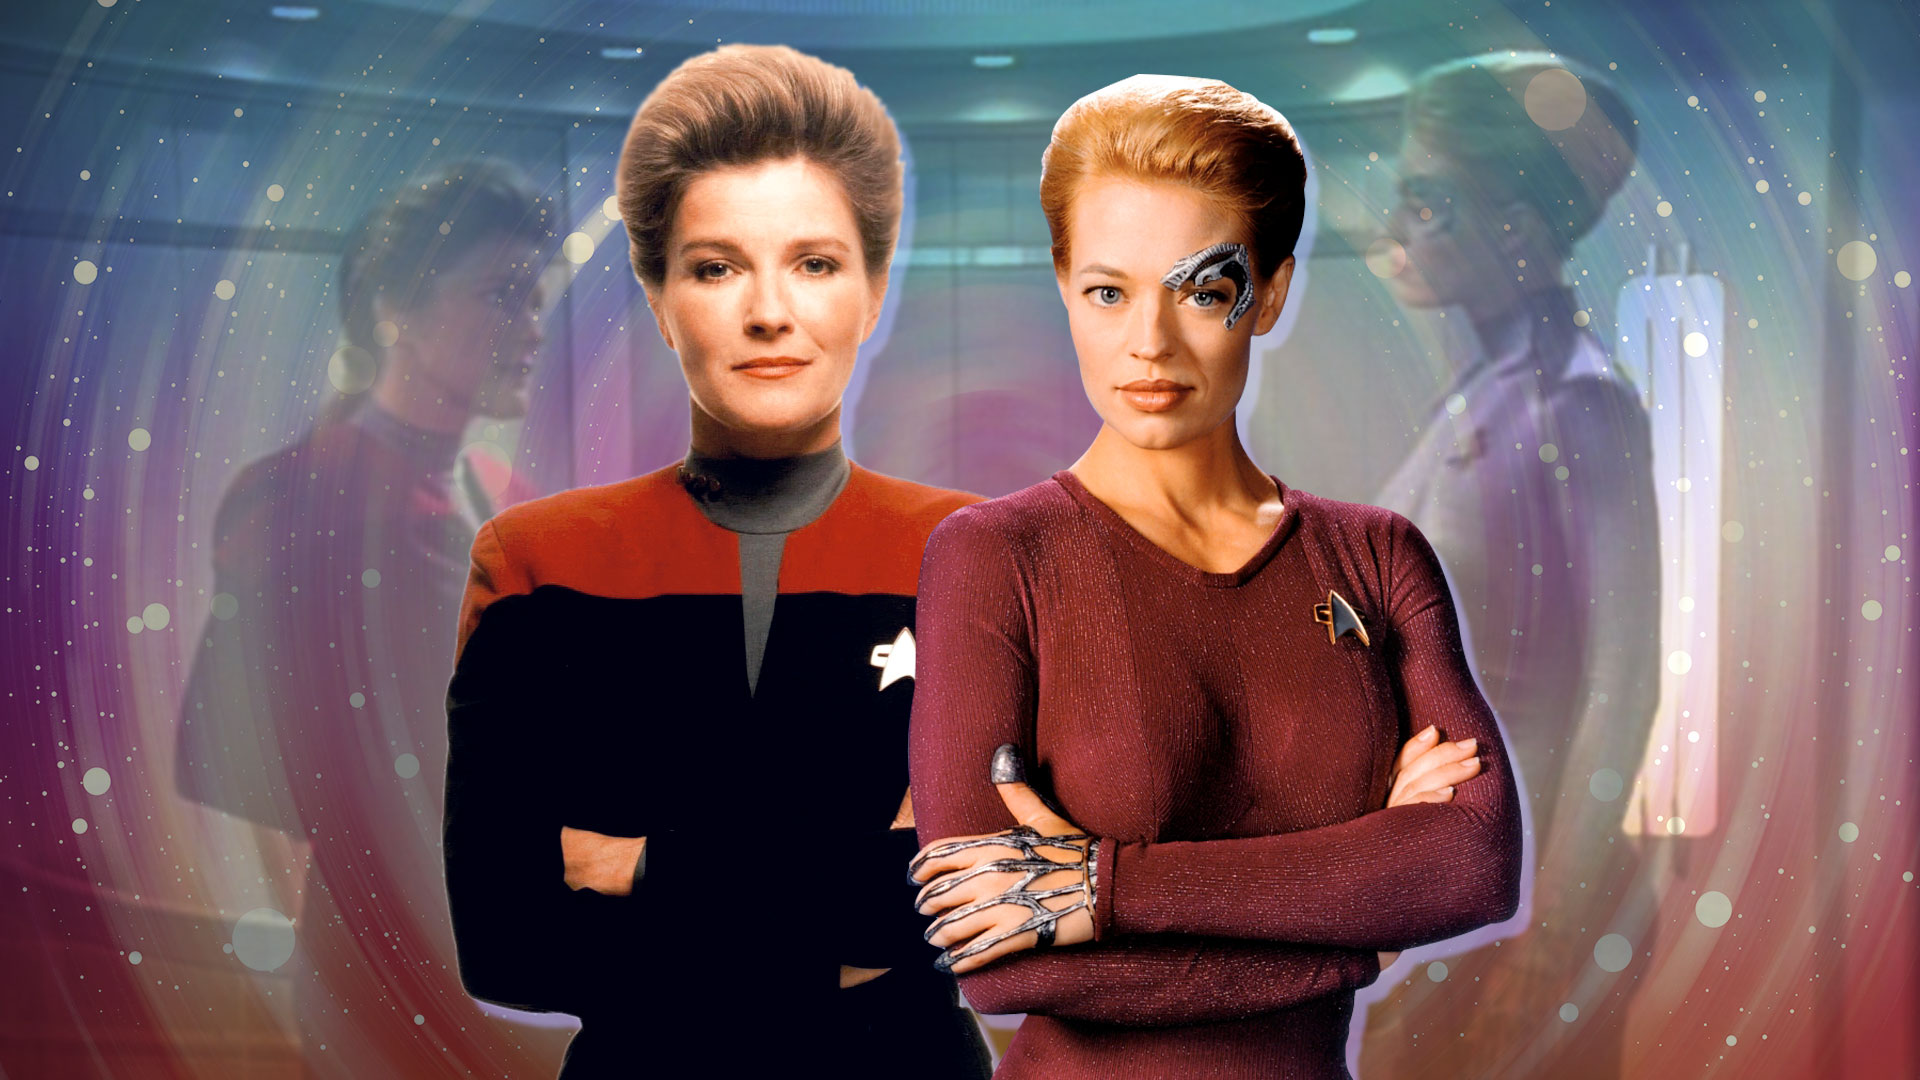 Watch Star Trek Voyager in 4K, thanks to AI upscaling TechRadar